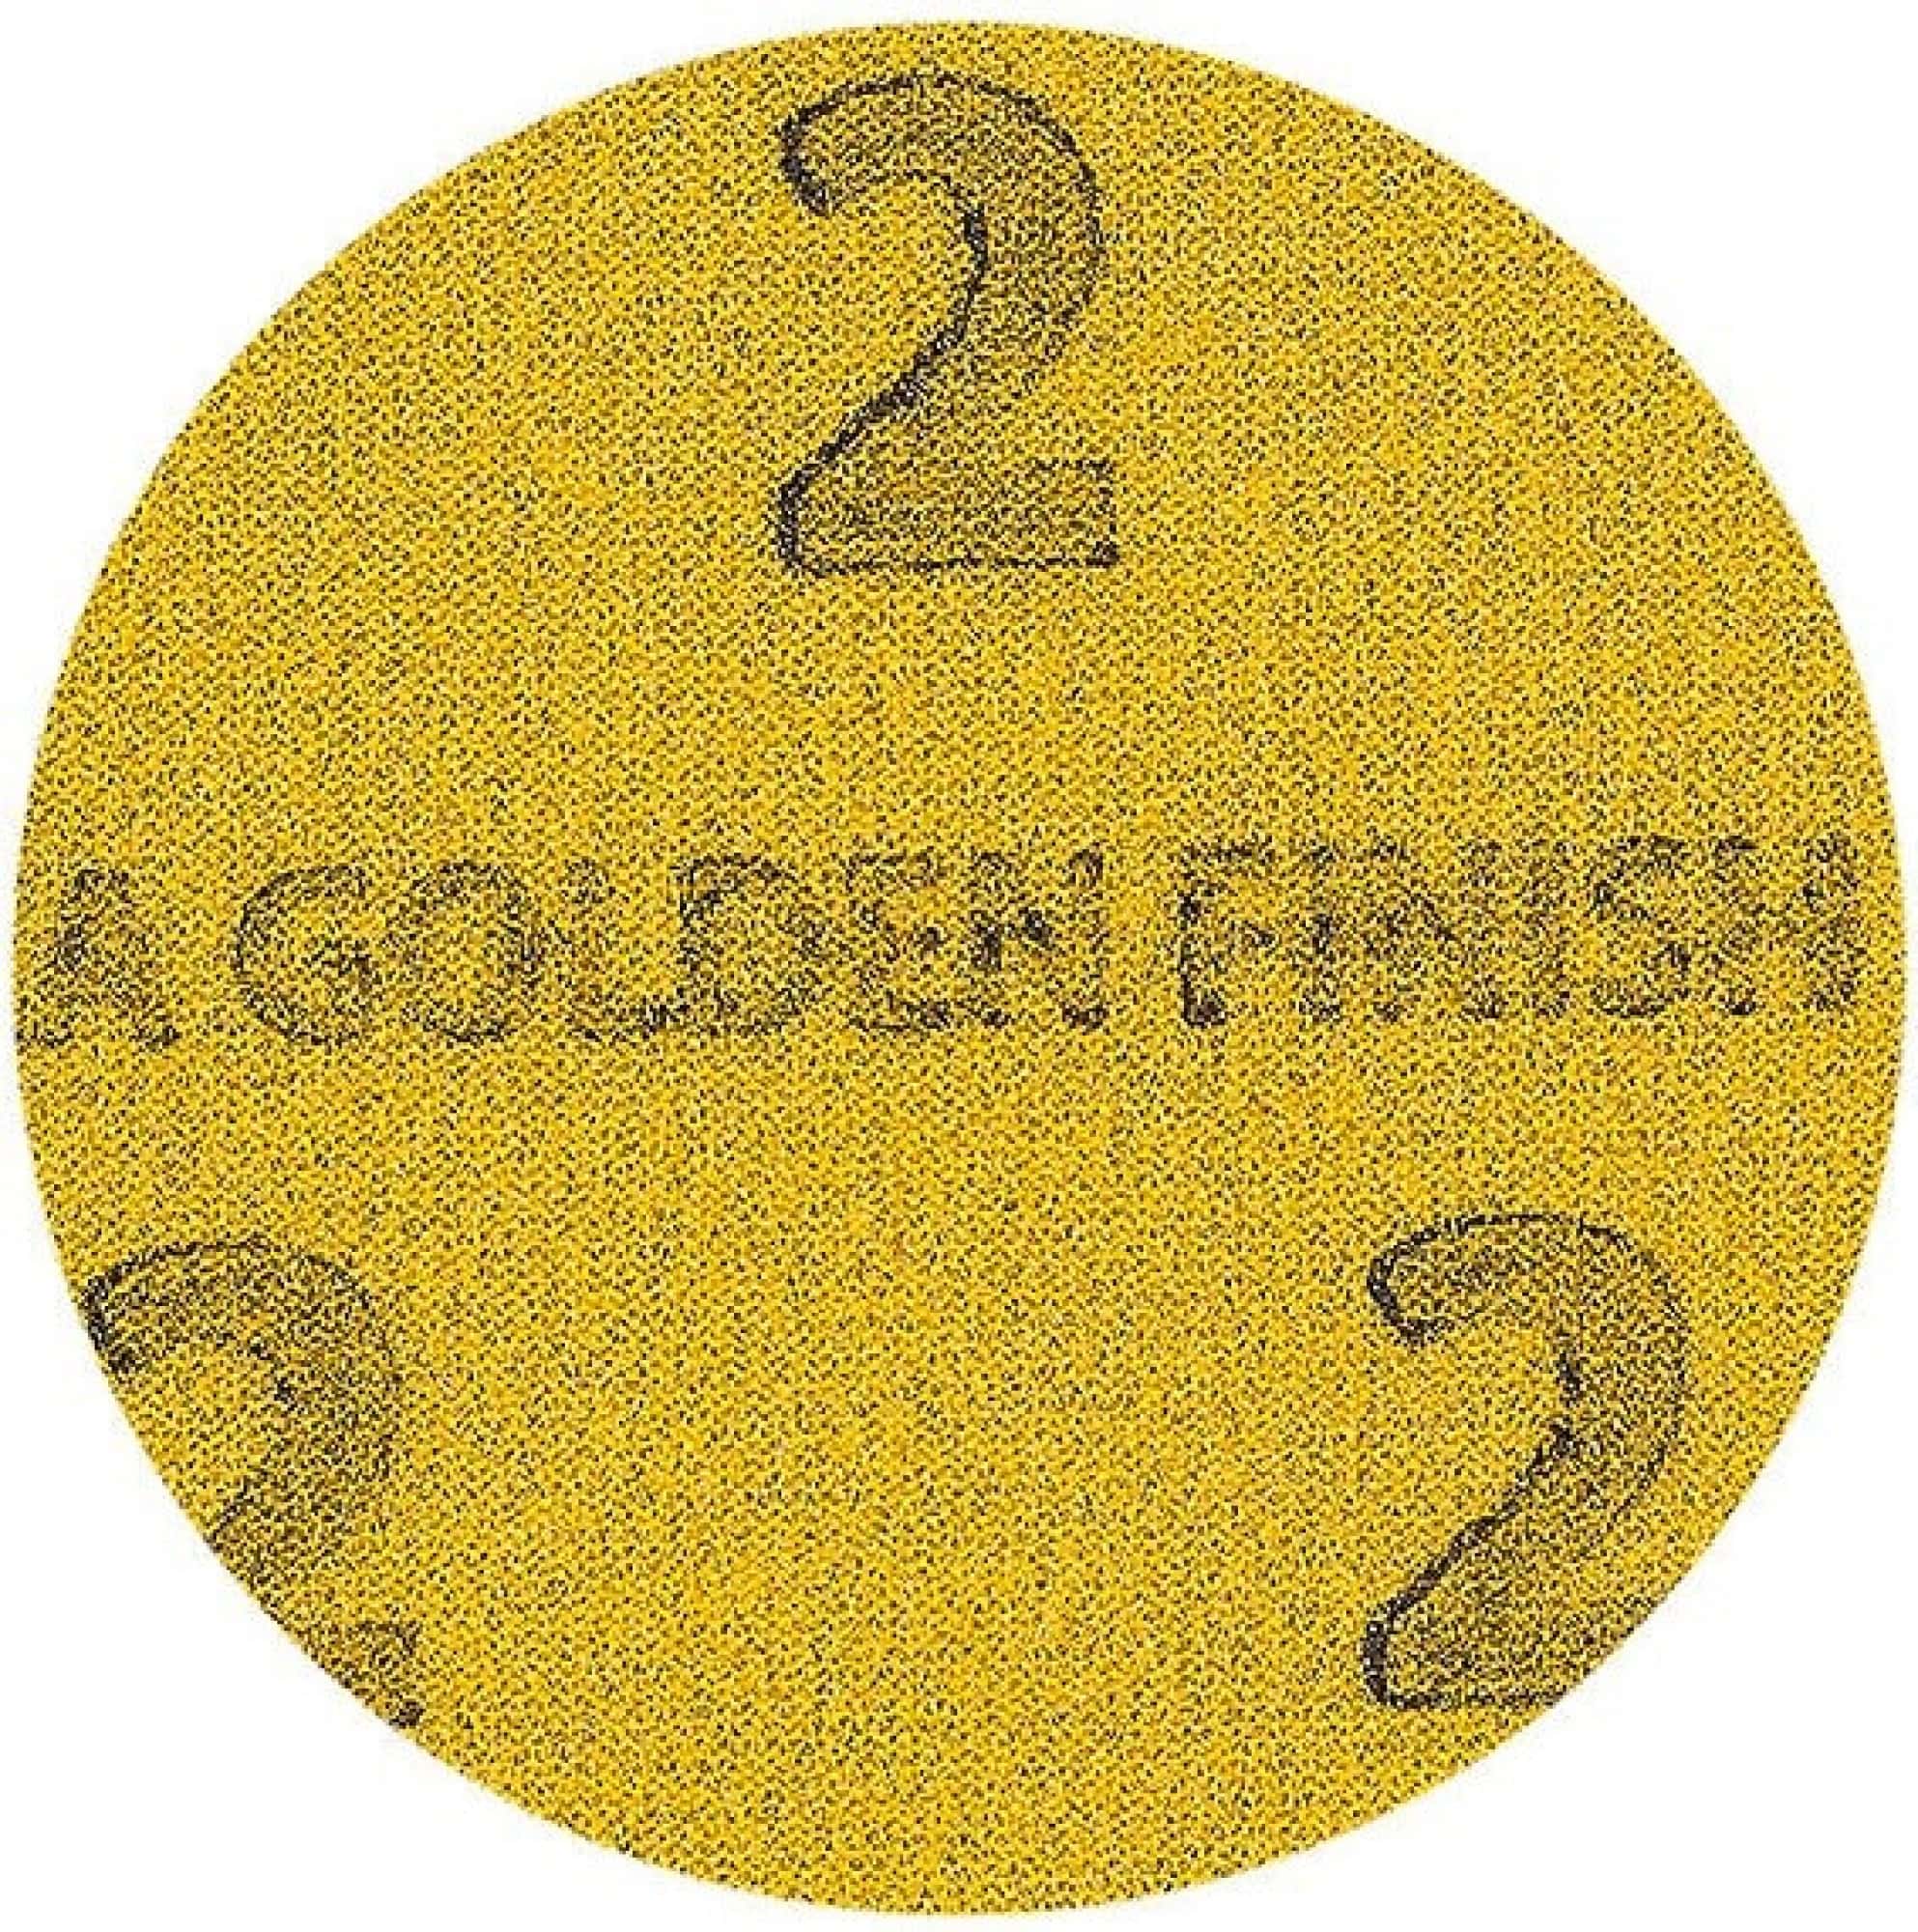 Mirka® Golden Finish-2 8M539581, Ø 77 mm, Ungelocht, Kletthaftend, Schleifscheibe mit Aluminiumkorn, Für Finisharbeiten